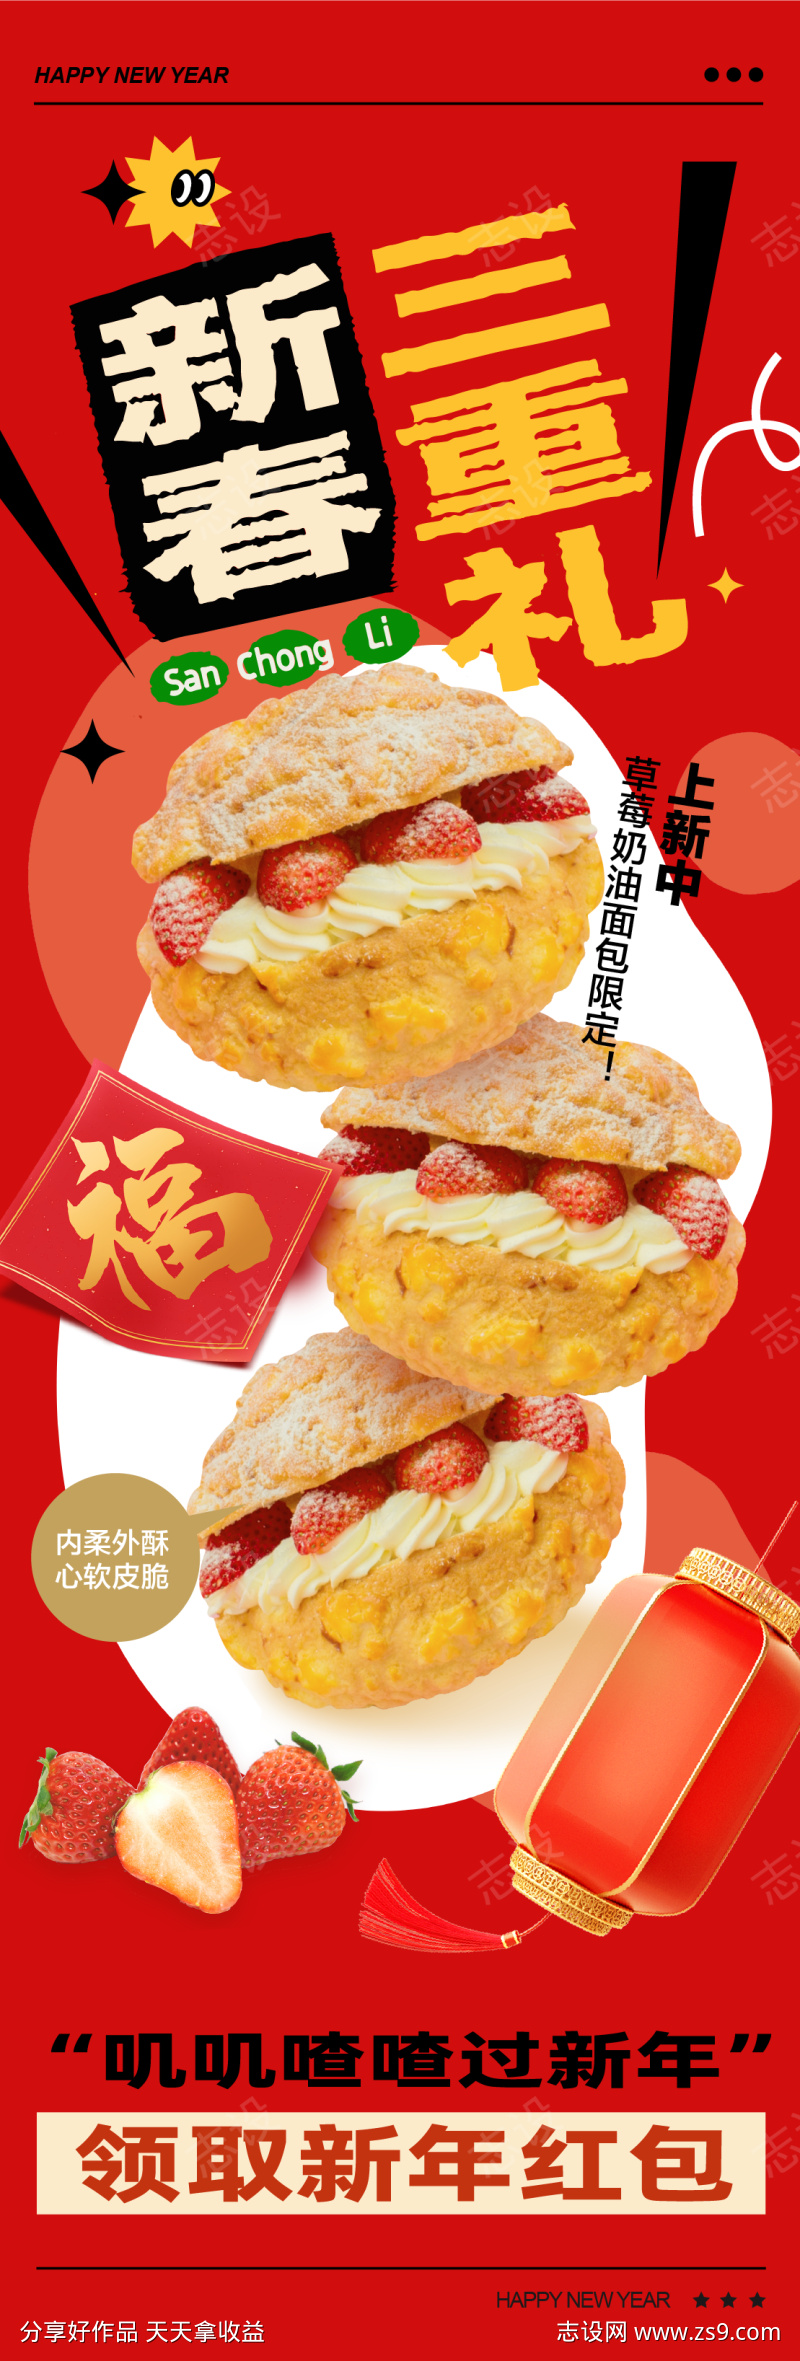 新春美食促销活动海报